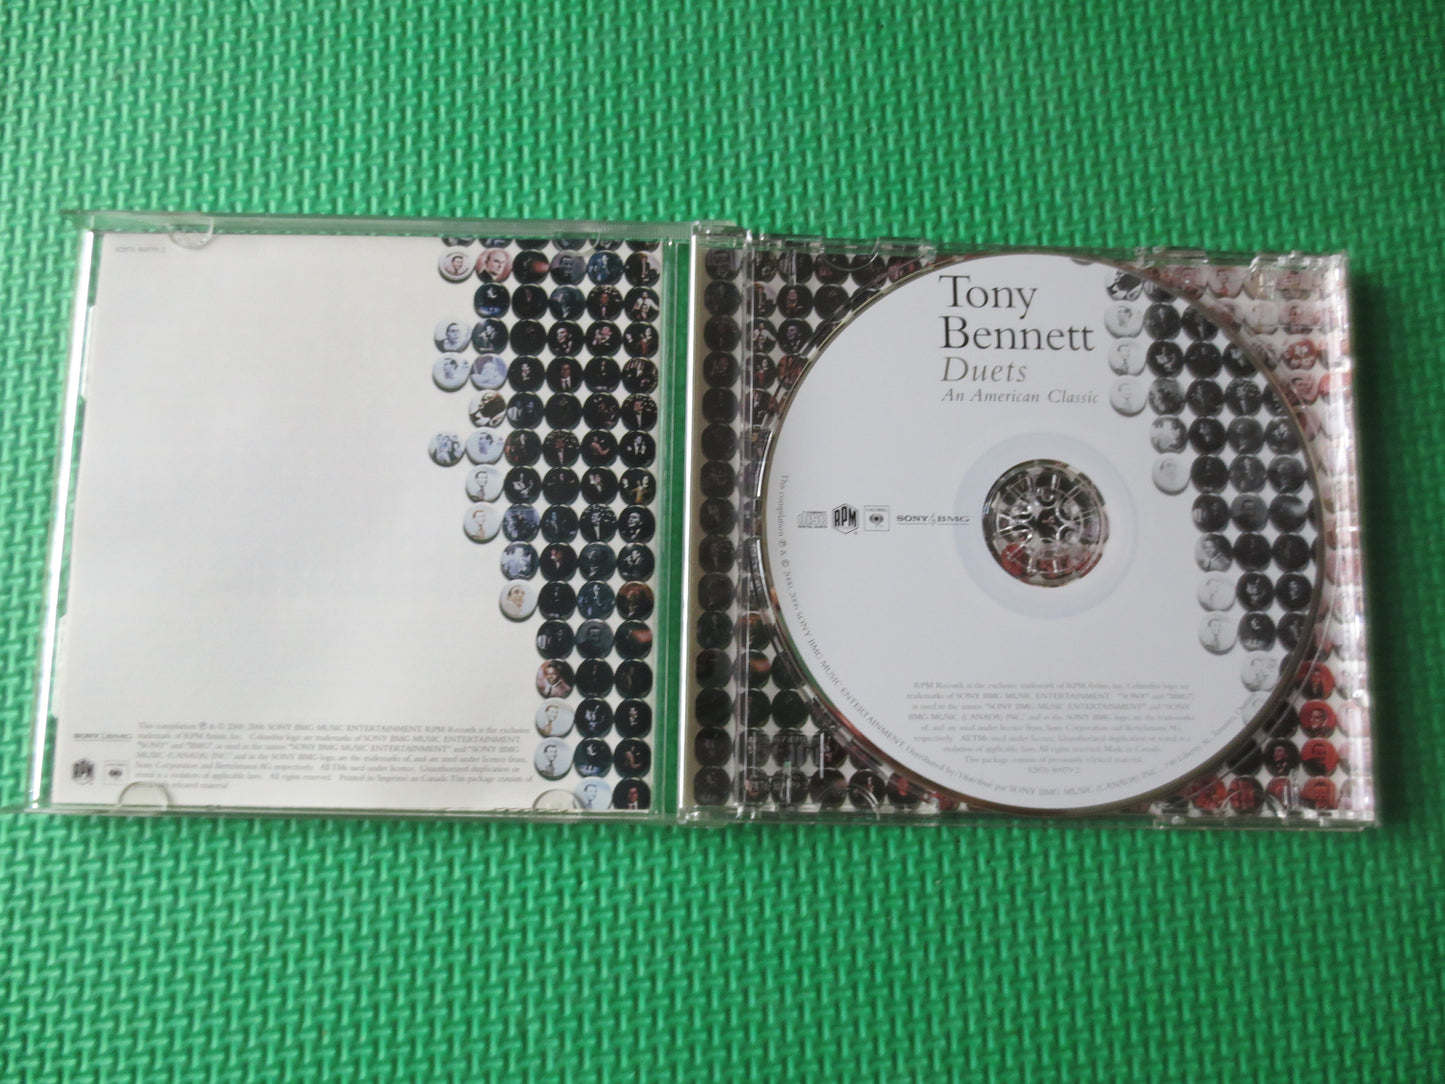 TONY BENNETT, DUETS, Tony Bennett Cds, Jazz Cds, Music Cds, Tony Bennett Albums, Jazz Music Cd, Big Bands, 2000 Compact Discs